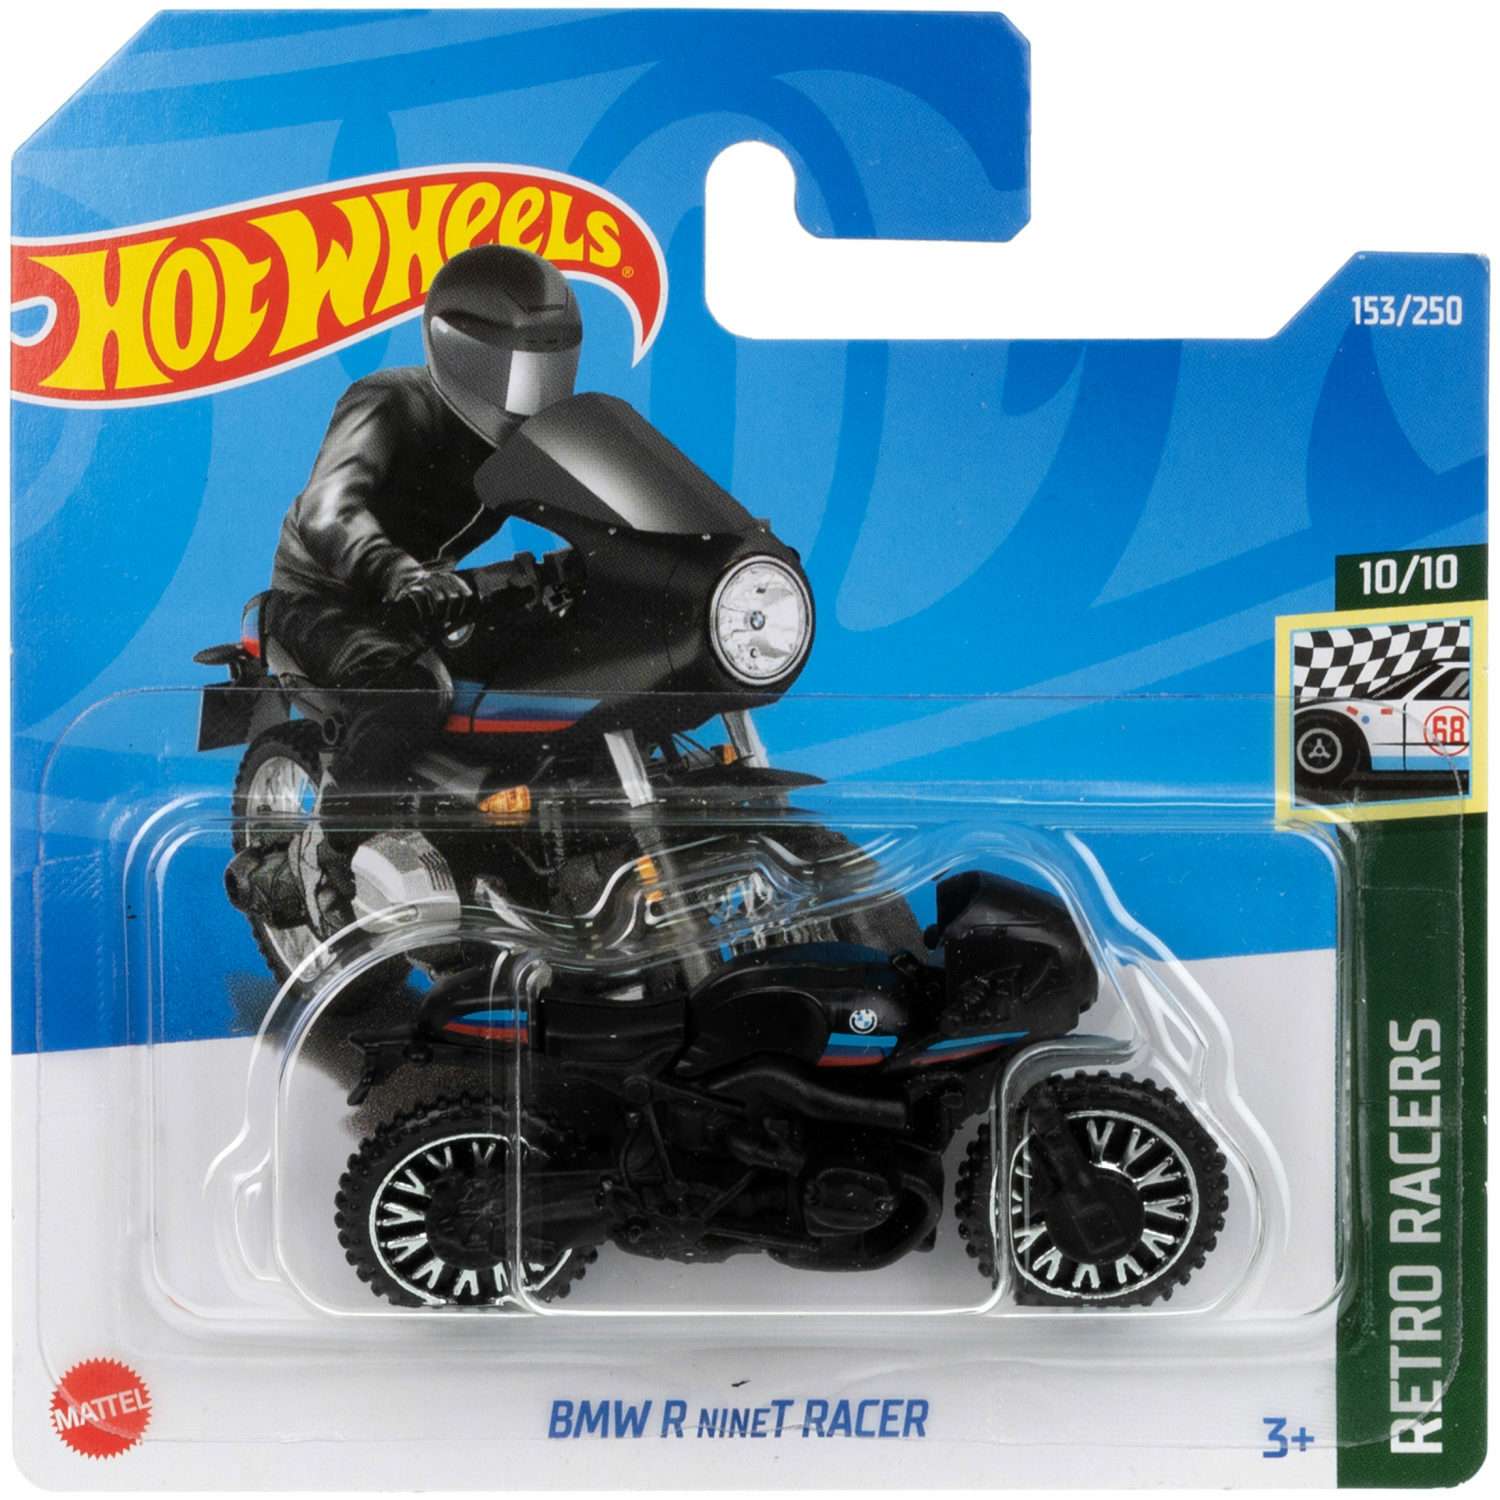 Коллекционная машинка Hot Wheels БМВ r ninet racer 5785-110 - фото 6